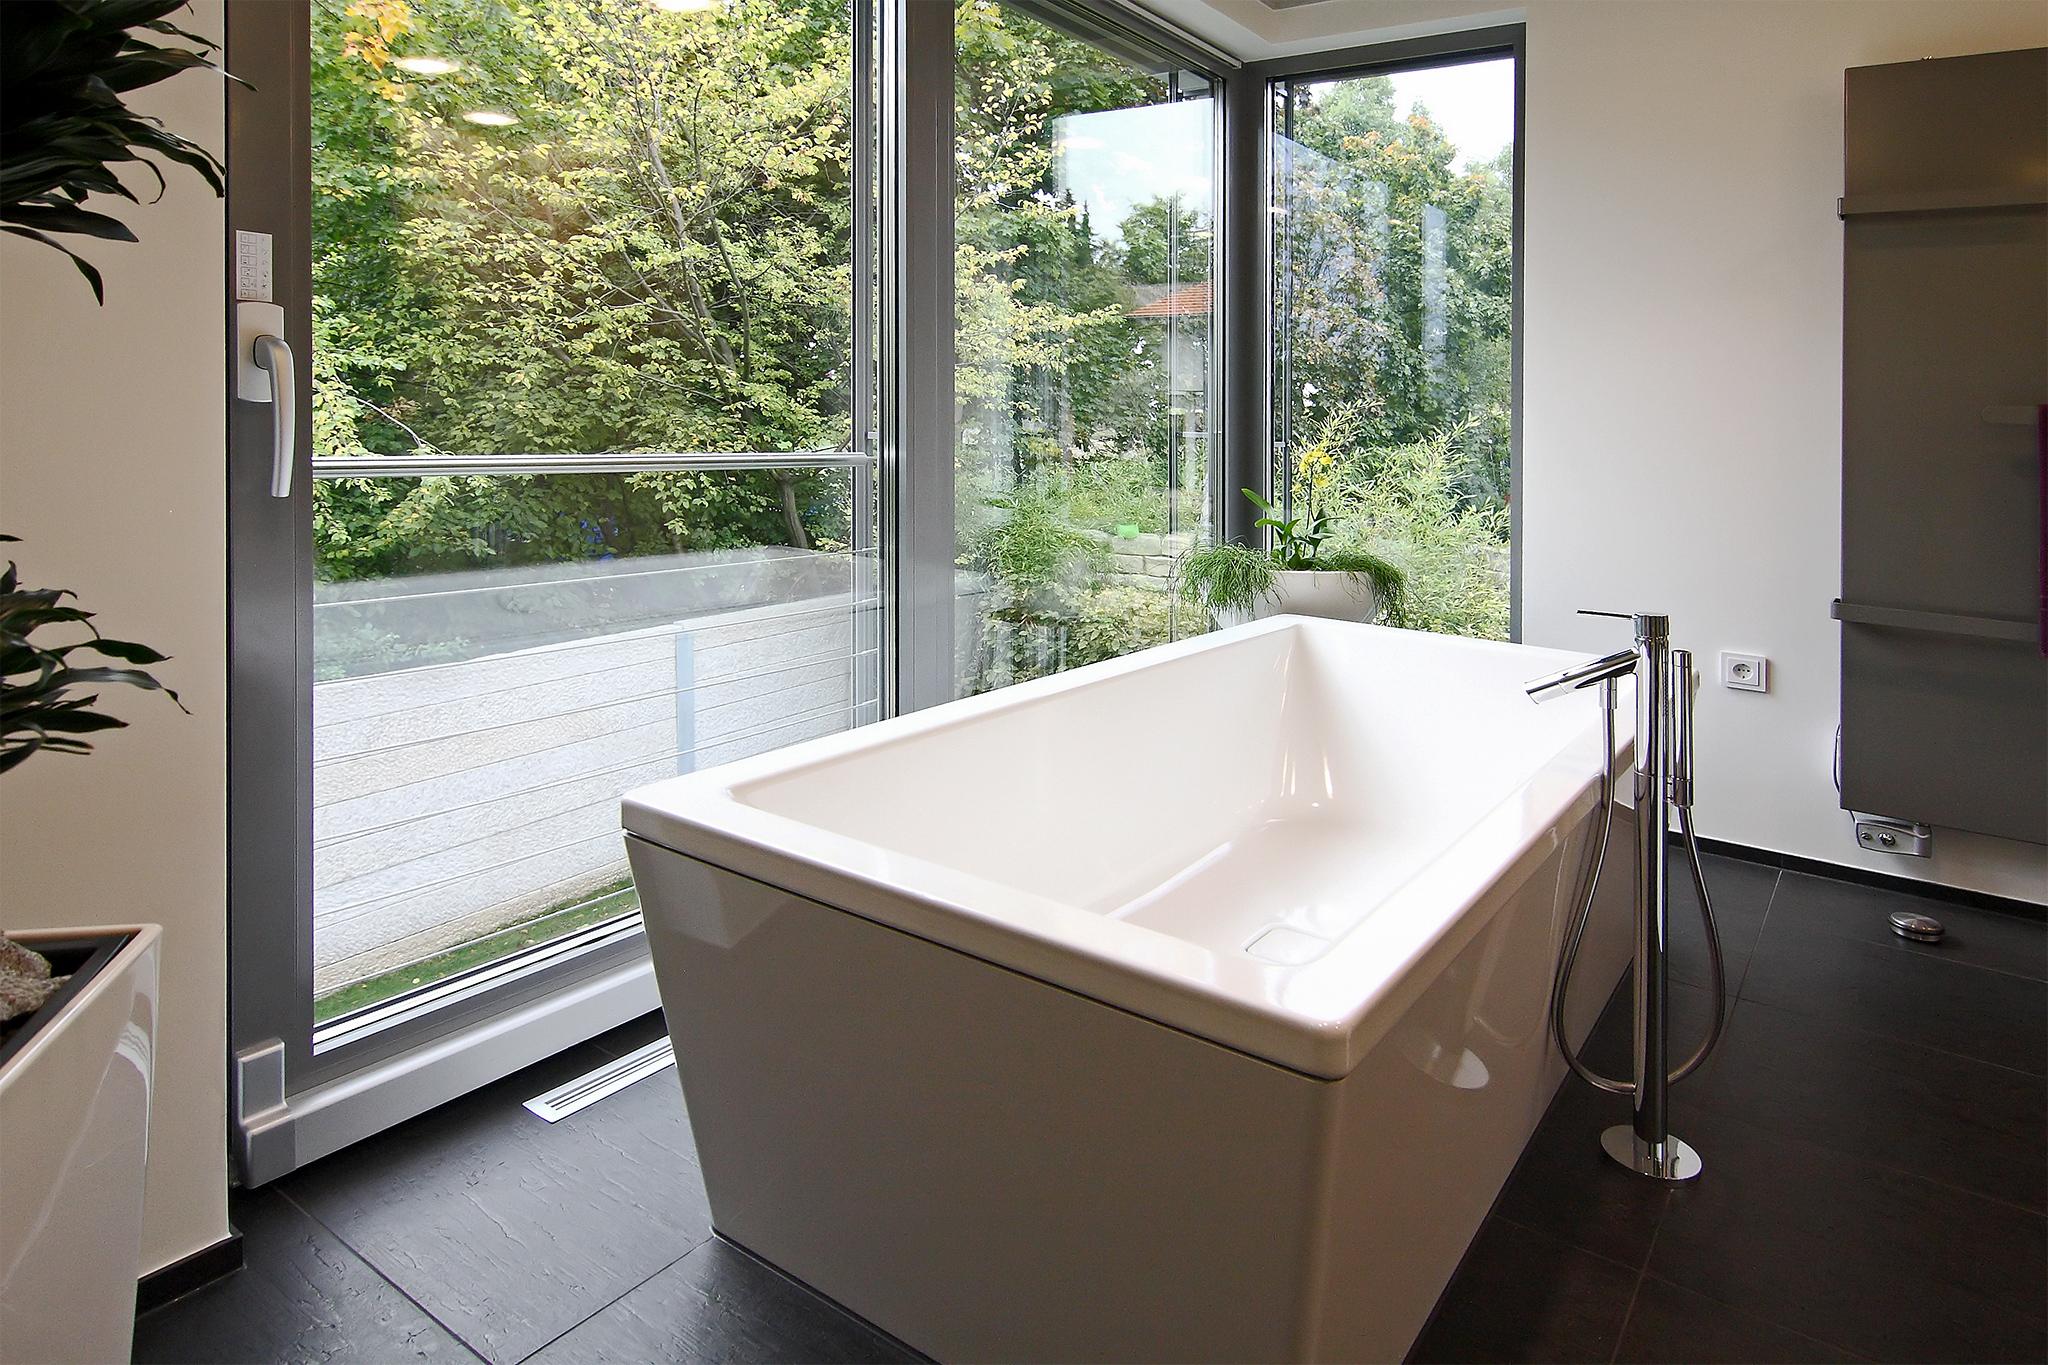 Freistehende Badewanne mit Blick ins Grüne #freistehendebadewanne #bodentiefefenster ©HEIMWOHL GmbH